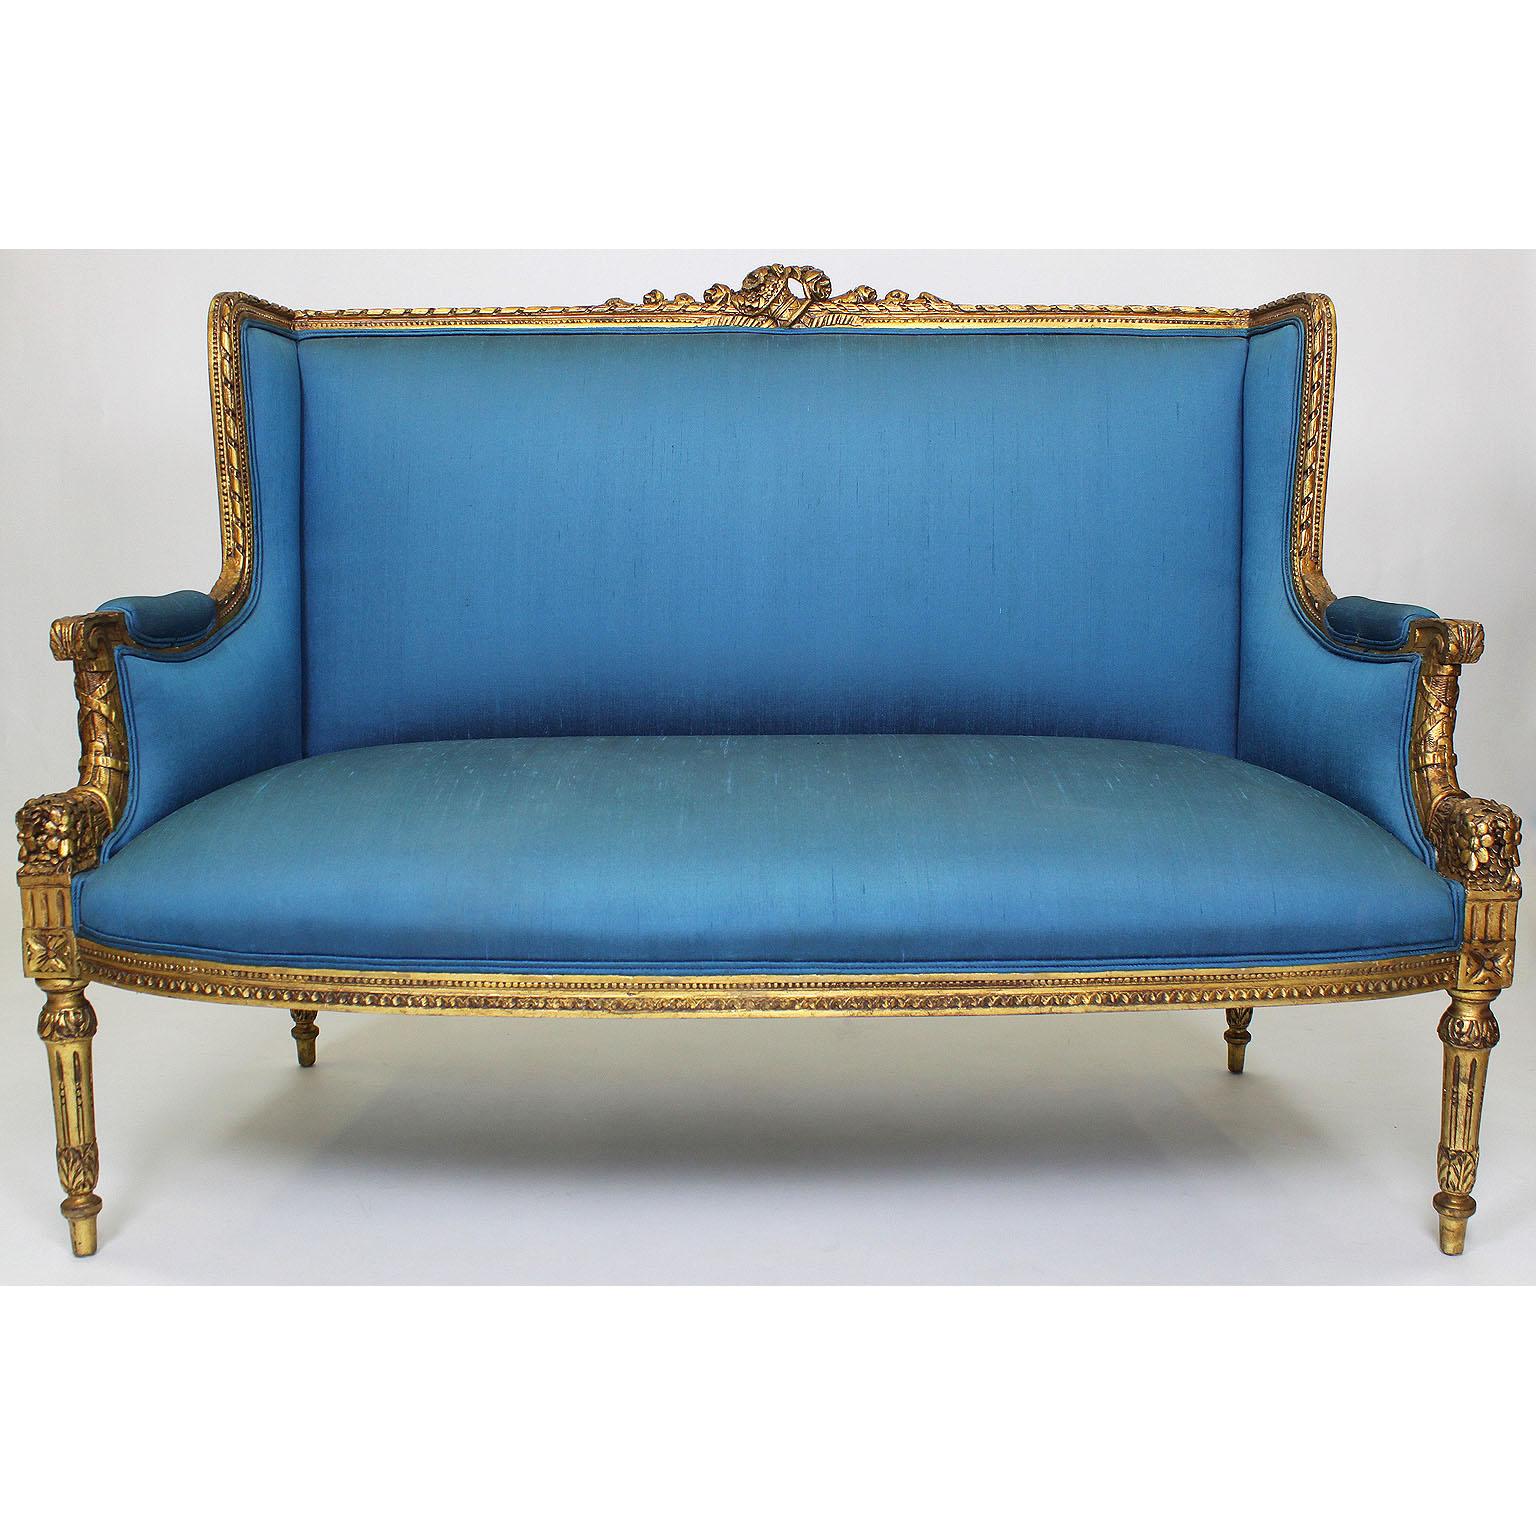 Ensemble de salon en bois doré sculpté de style Louis XVI, comprenant un canapé à deux corps et deux fauteuils, tous garnis de soie bleue de Paris, vers 1900.

La soie présente quelques taches de stries.

Mesures : Hauteur du canapé : 40 3/4 pouces